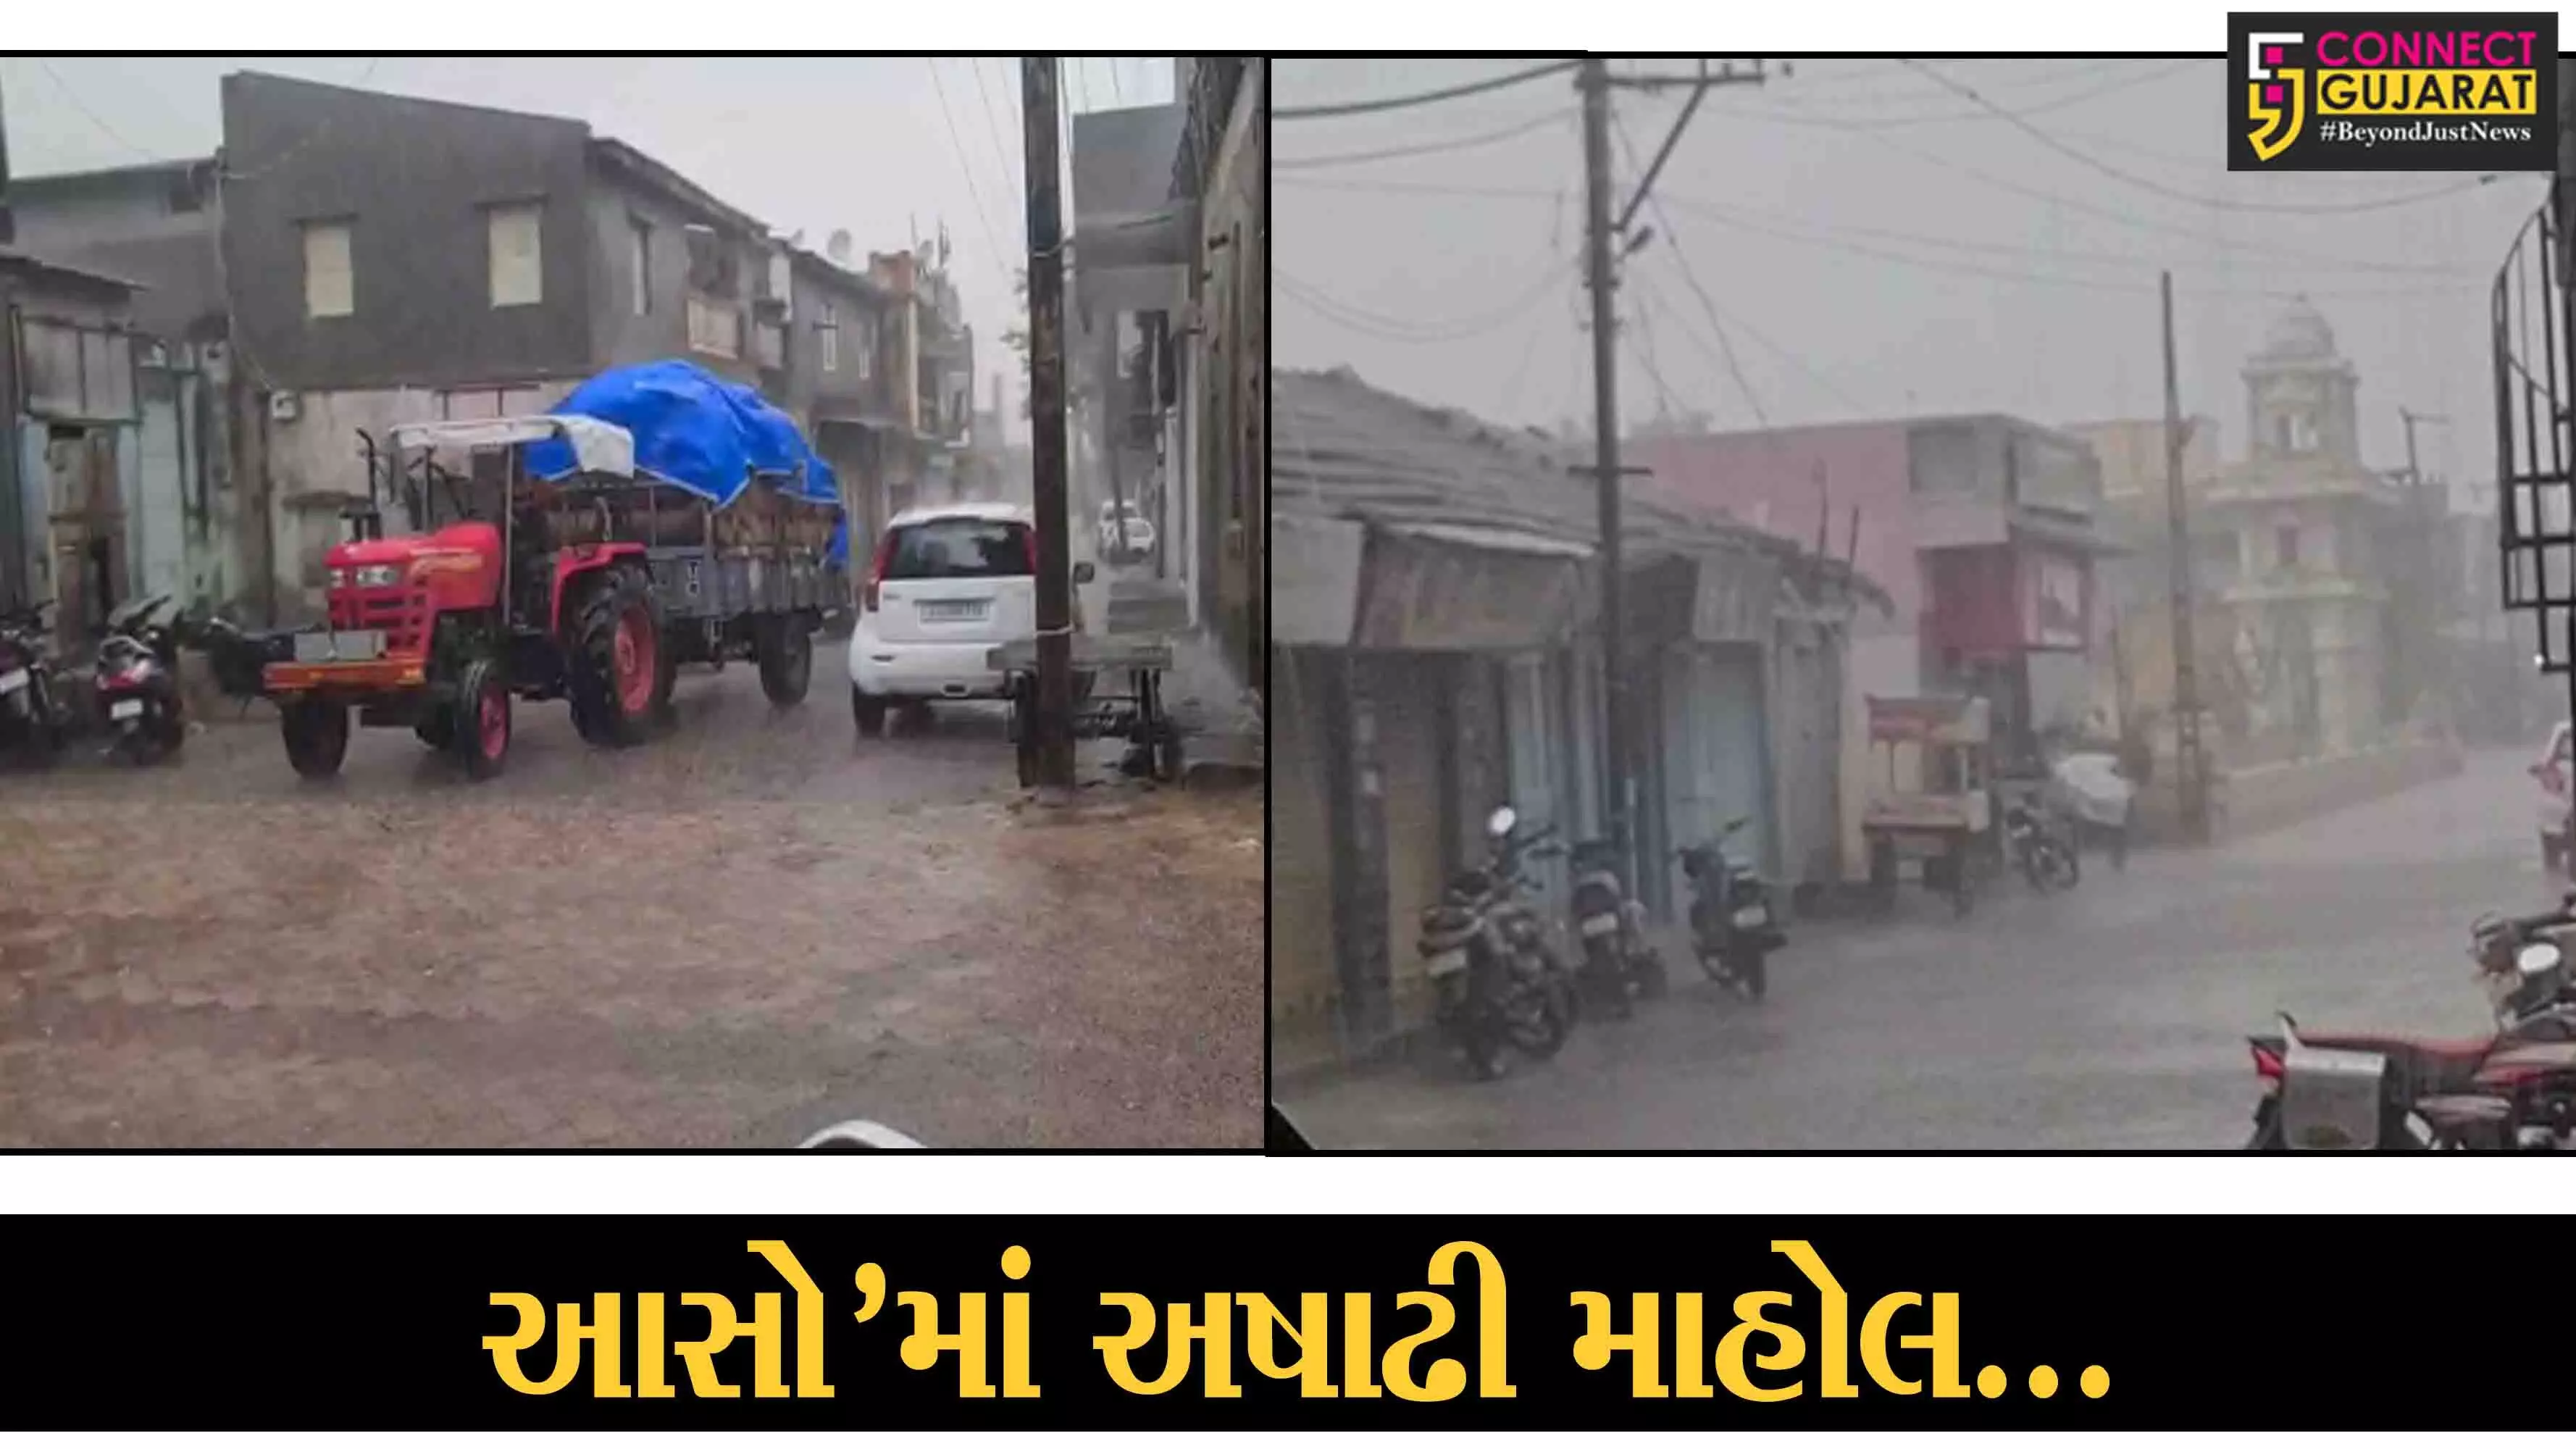 આસોમાં અષાઢી માહોલ : ગુજરાતના વિવિધ વિસ્તારોમાં વરસ્યો વરસાદ, પાક નુકશાનની ભીતિથી ખેડૂતો ચિંતીત…